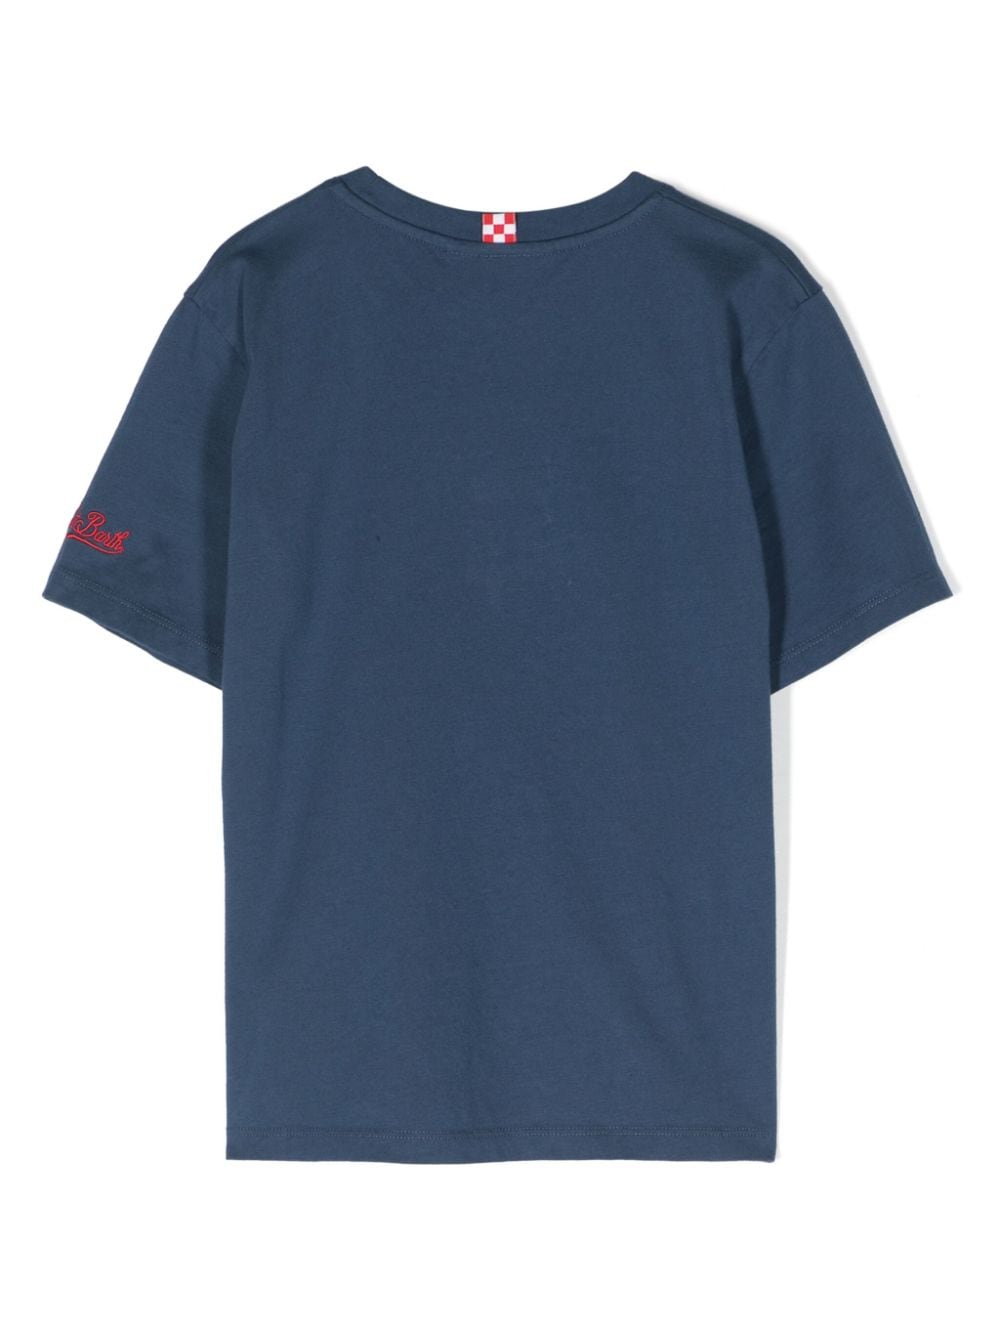 MC2 Saint Barth Kids x Insulti Luminosi cotton T-shirt - Blauw